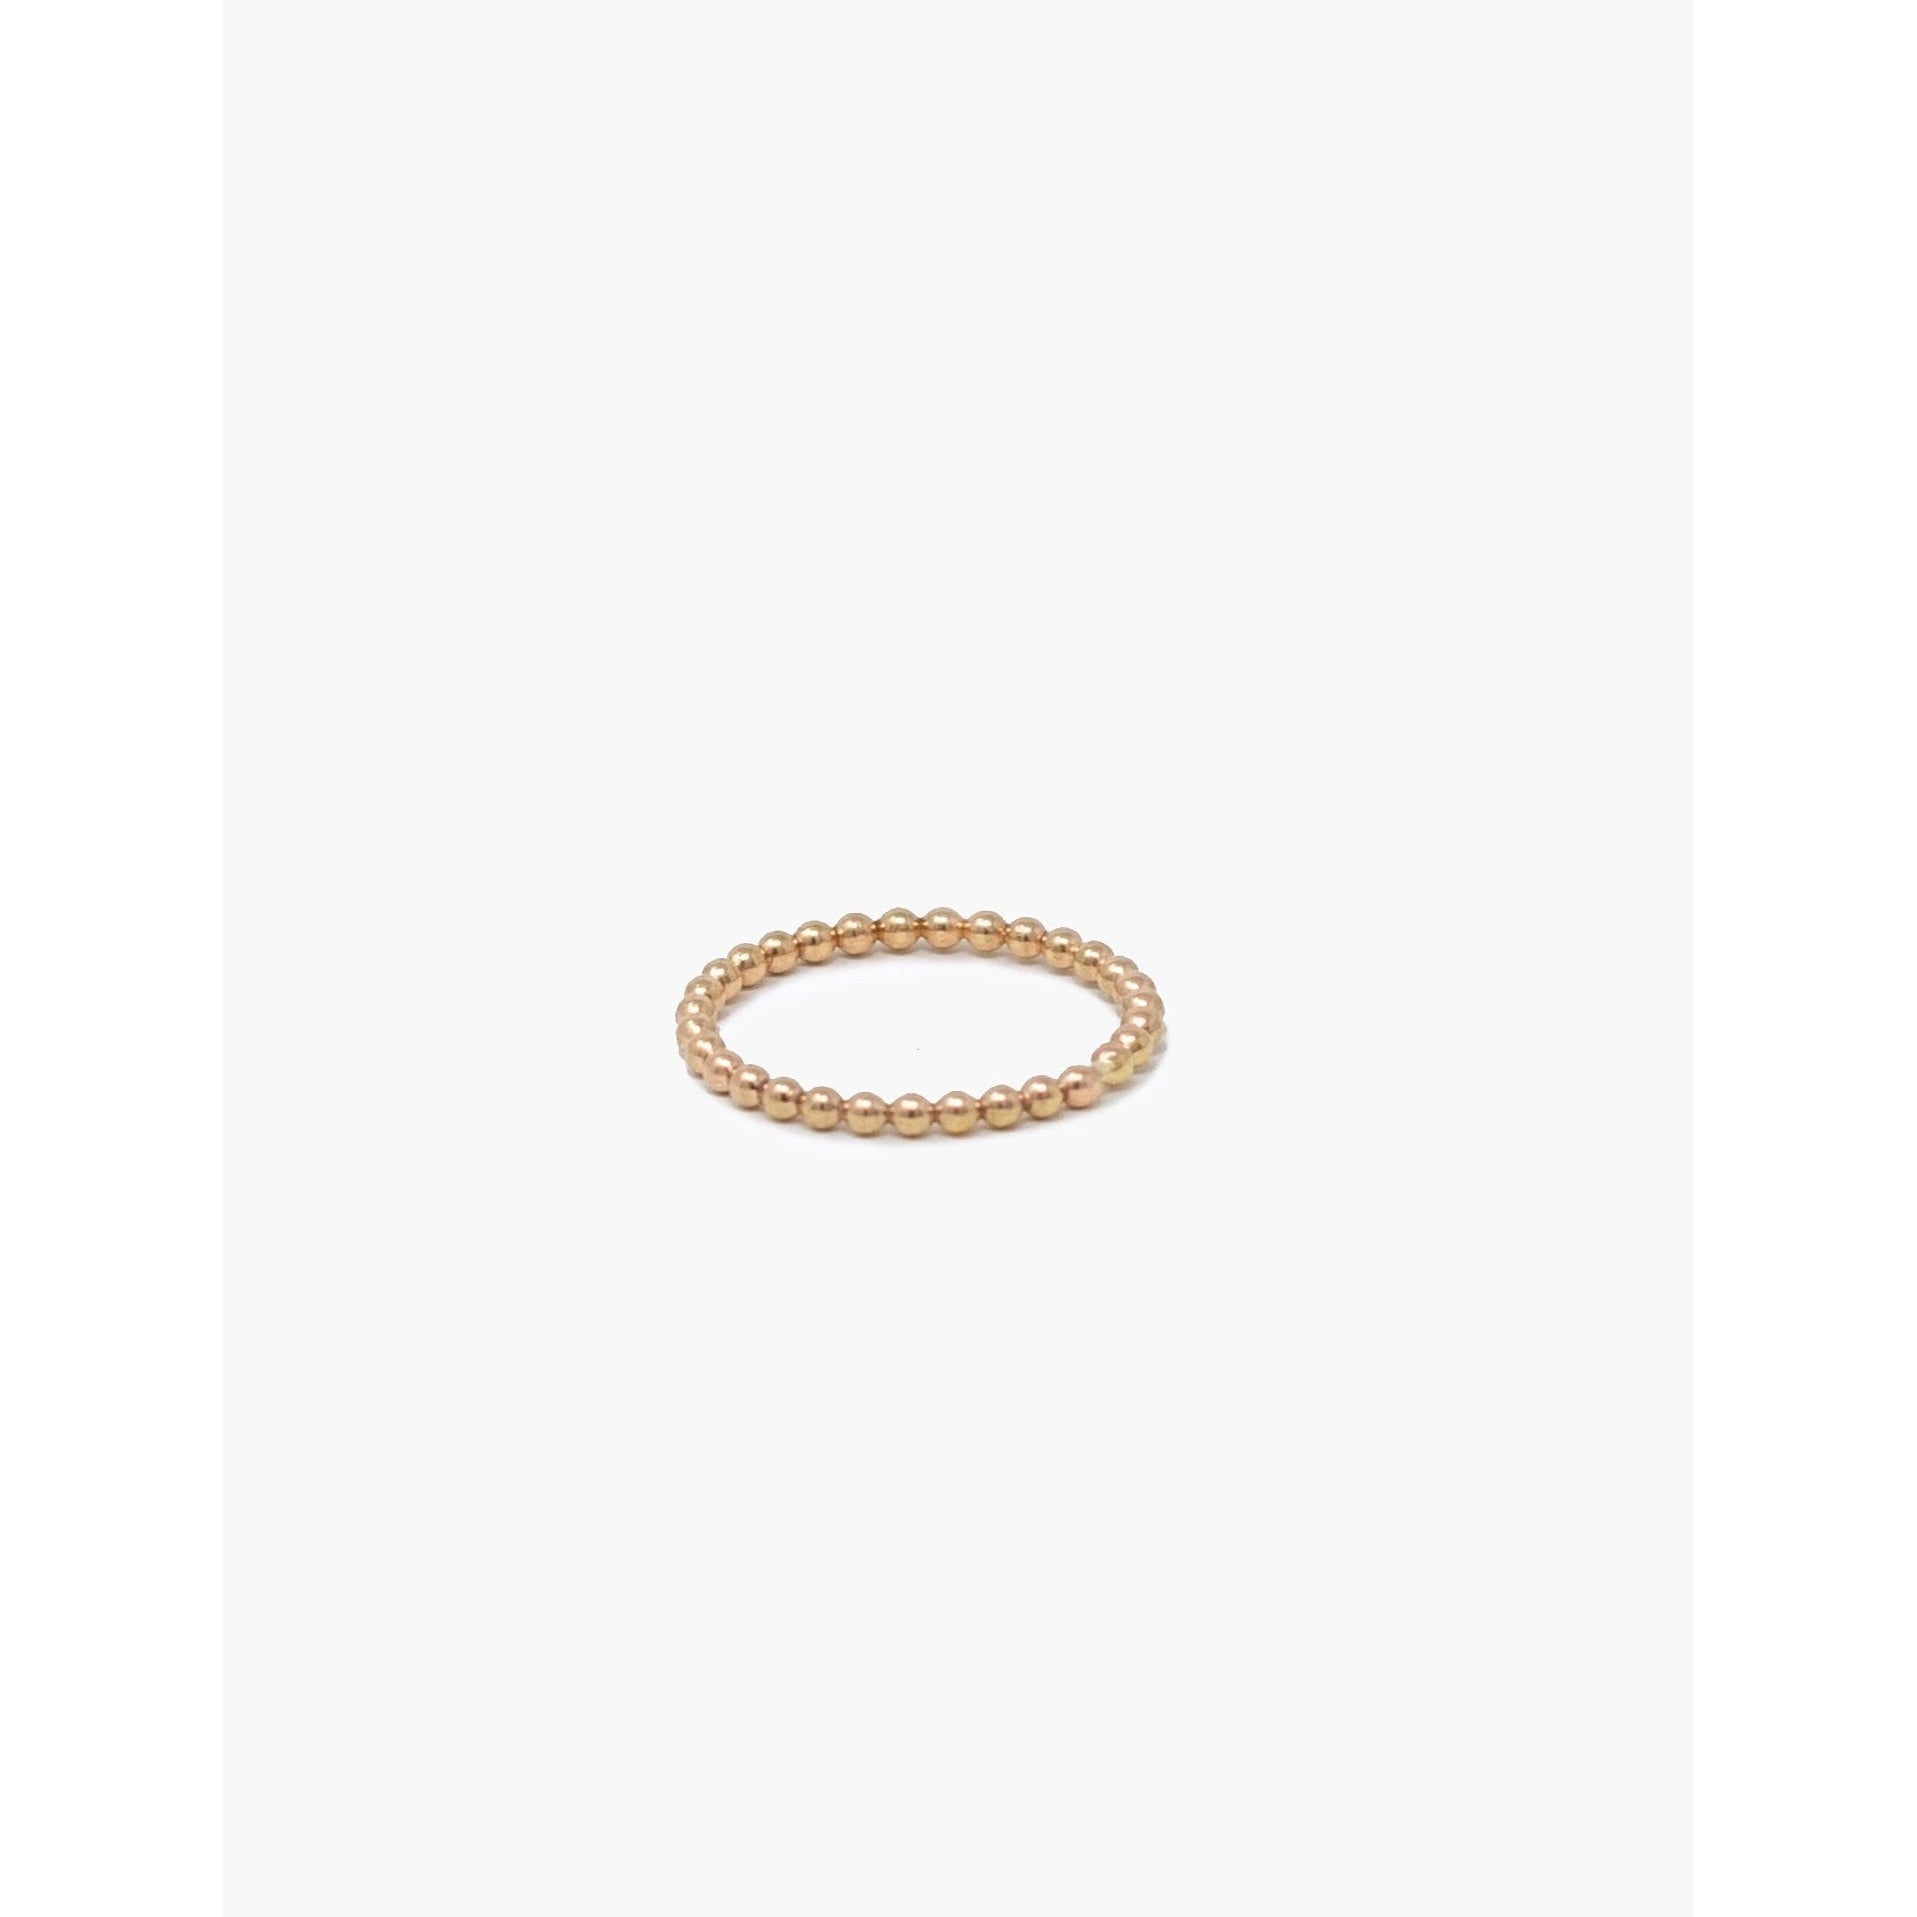 Caesar Ring- 14k Gold Fill